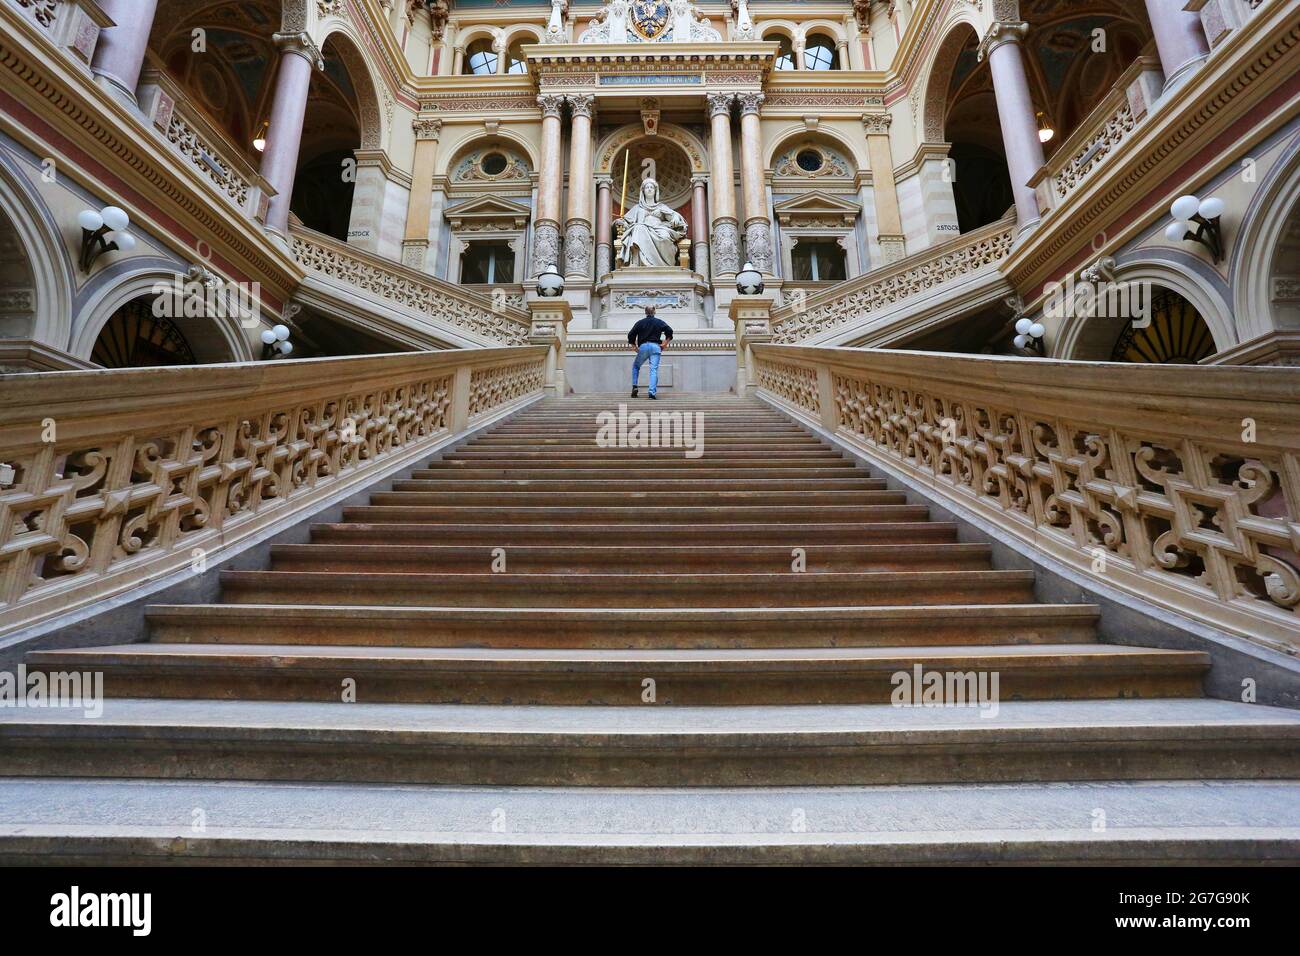 Wien, Blick auf die geometrisch angeordneten Linien des Treppenaufgangs im historiischen Justizpalast in der Innenstand von Wien, Österreich Foto Stock